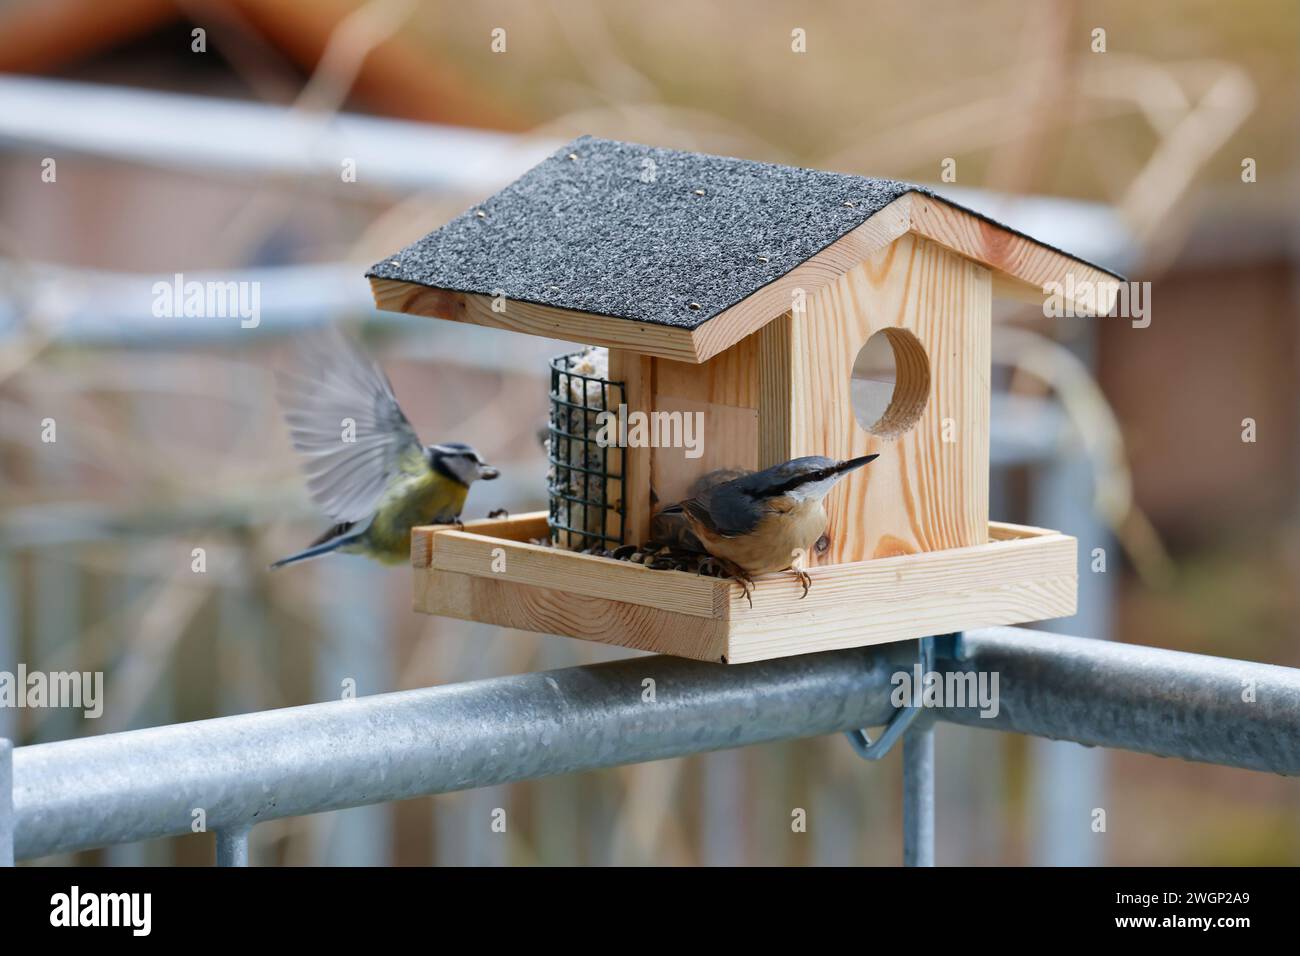 Vogelfütterung auf einem Balkon, Balkongeländer, Vogelfütterung, Fütterung, Futterhäuschen, Vogelfutterhäuschen, Vogelfutterhaus, Vogelhäuschen, Futte Foto Stock